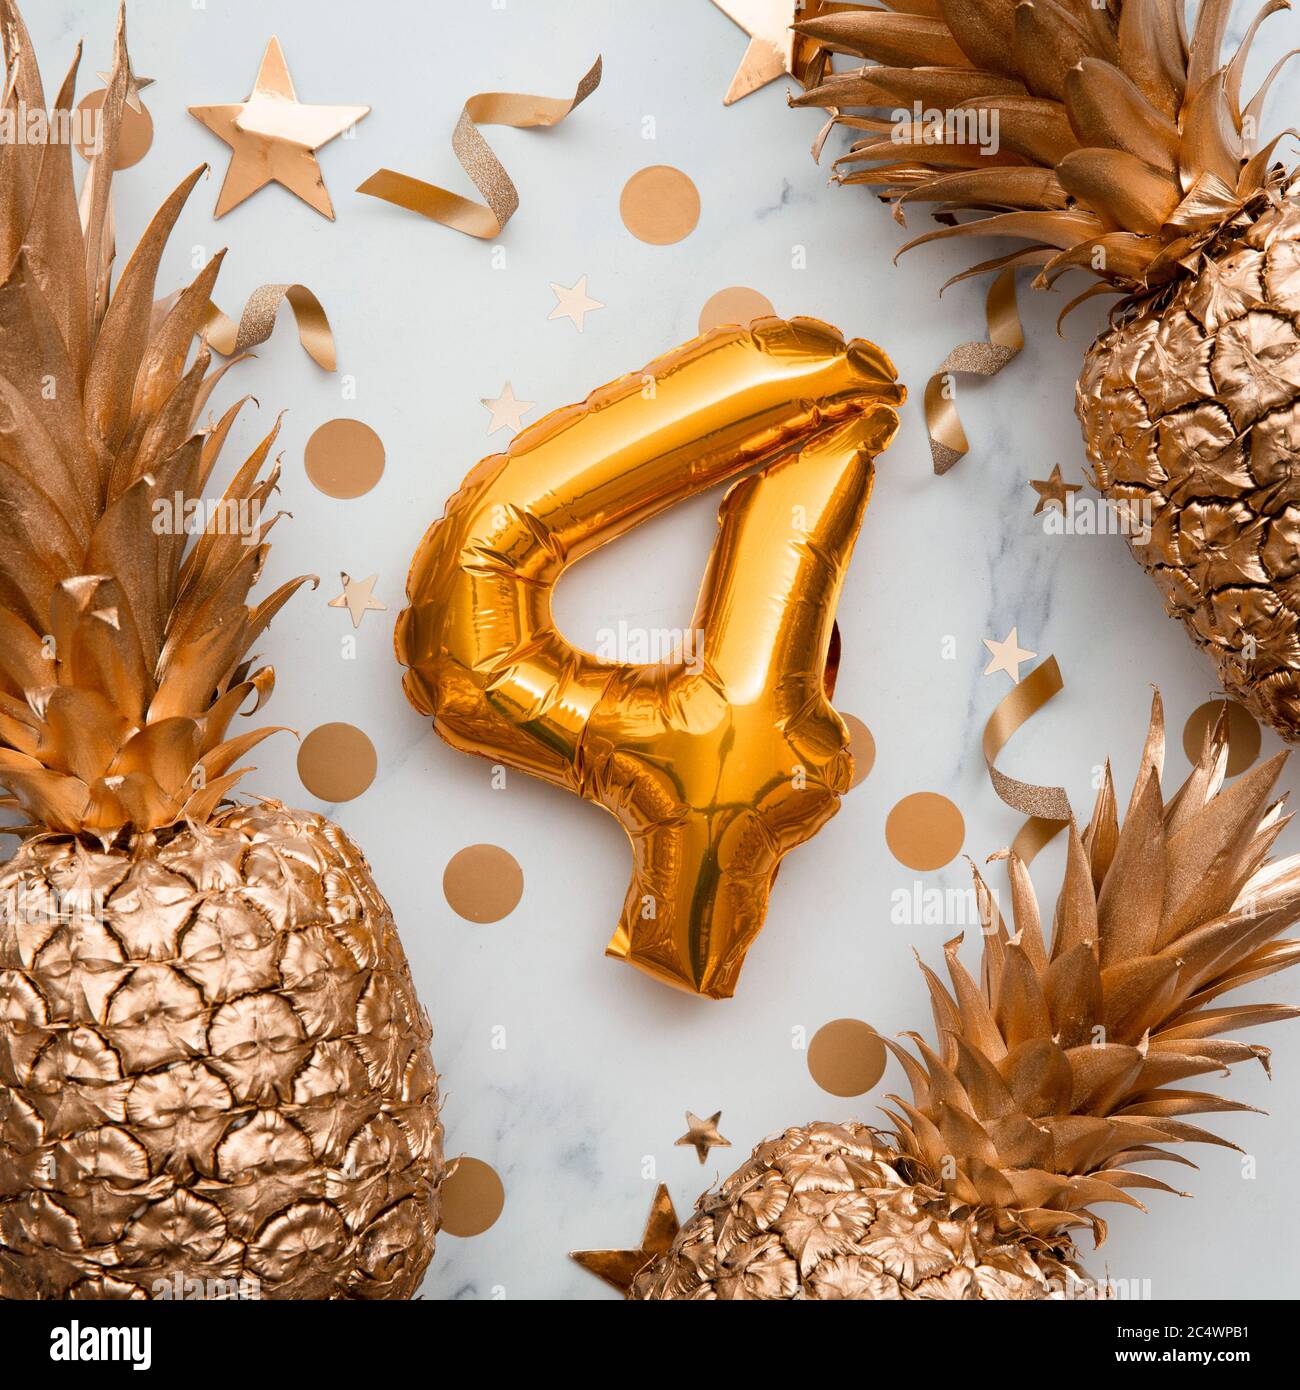 4° compleanno carta celebrazione con palloncini d'oro e ananas dorati Foto Stock